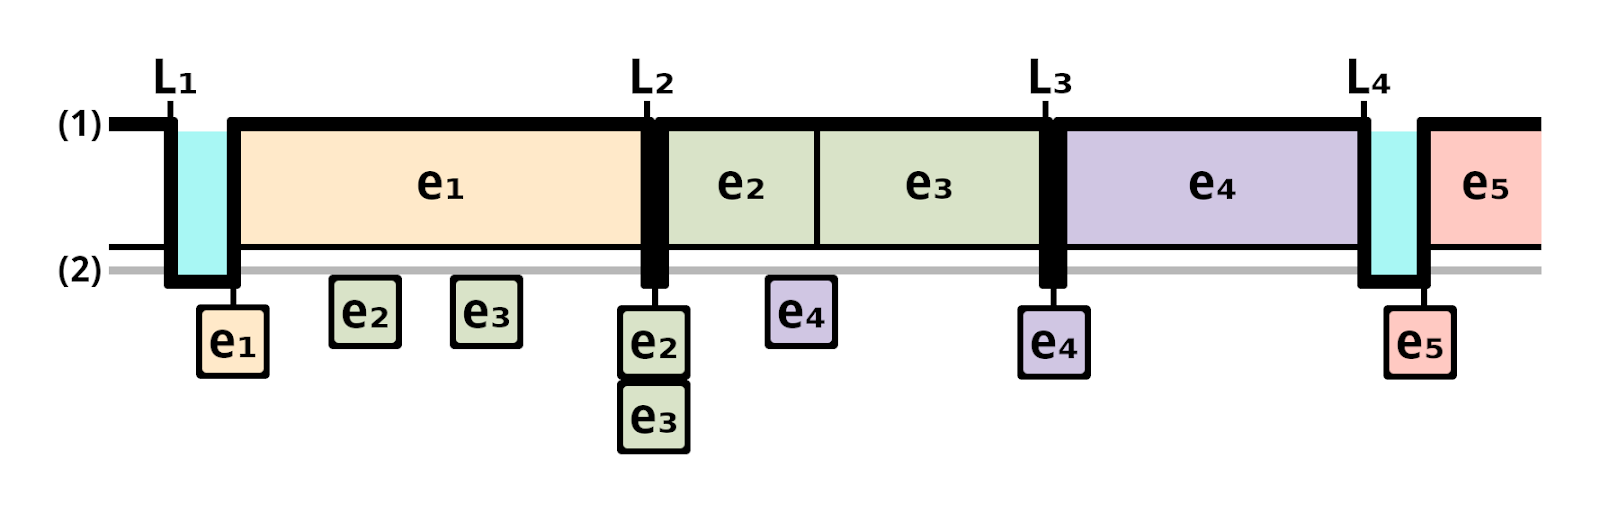 event loop diagram2